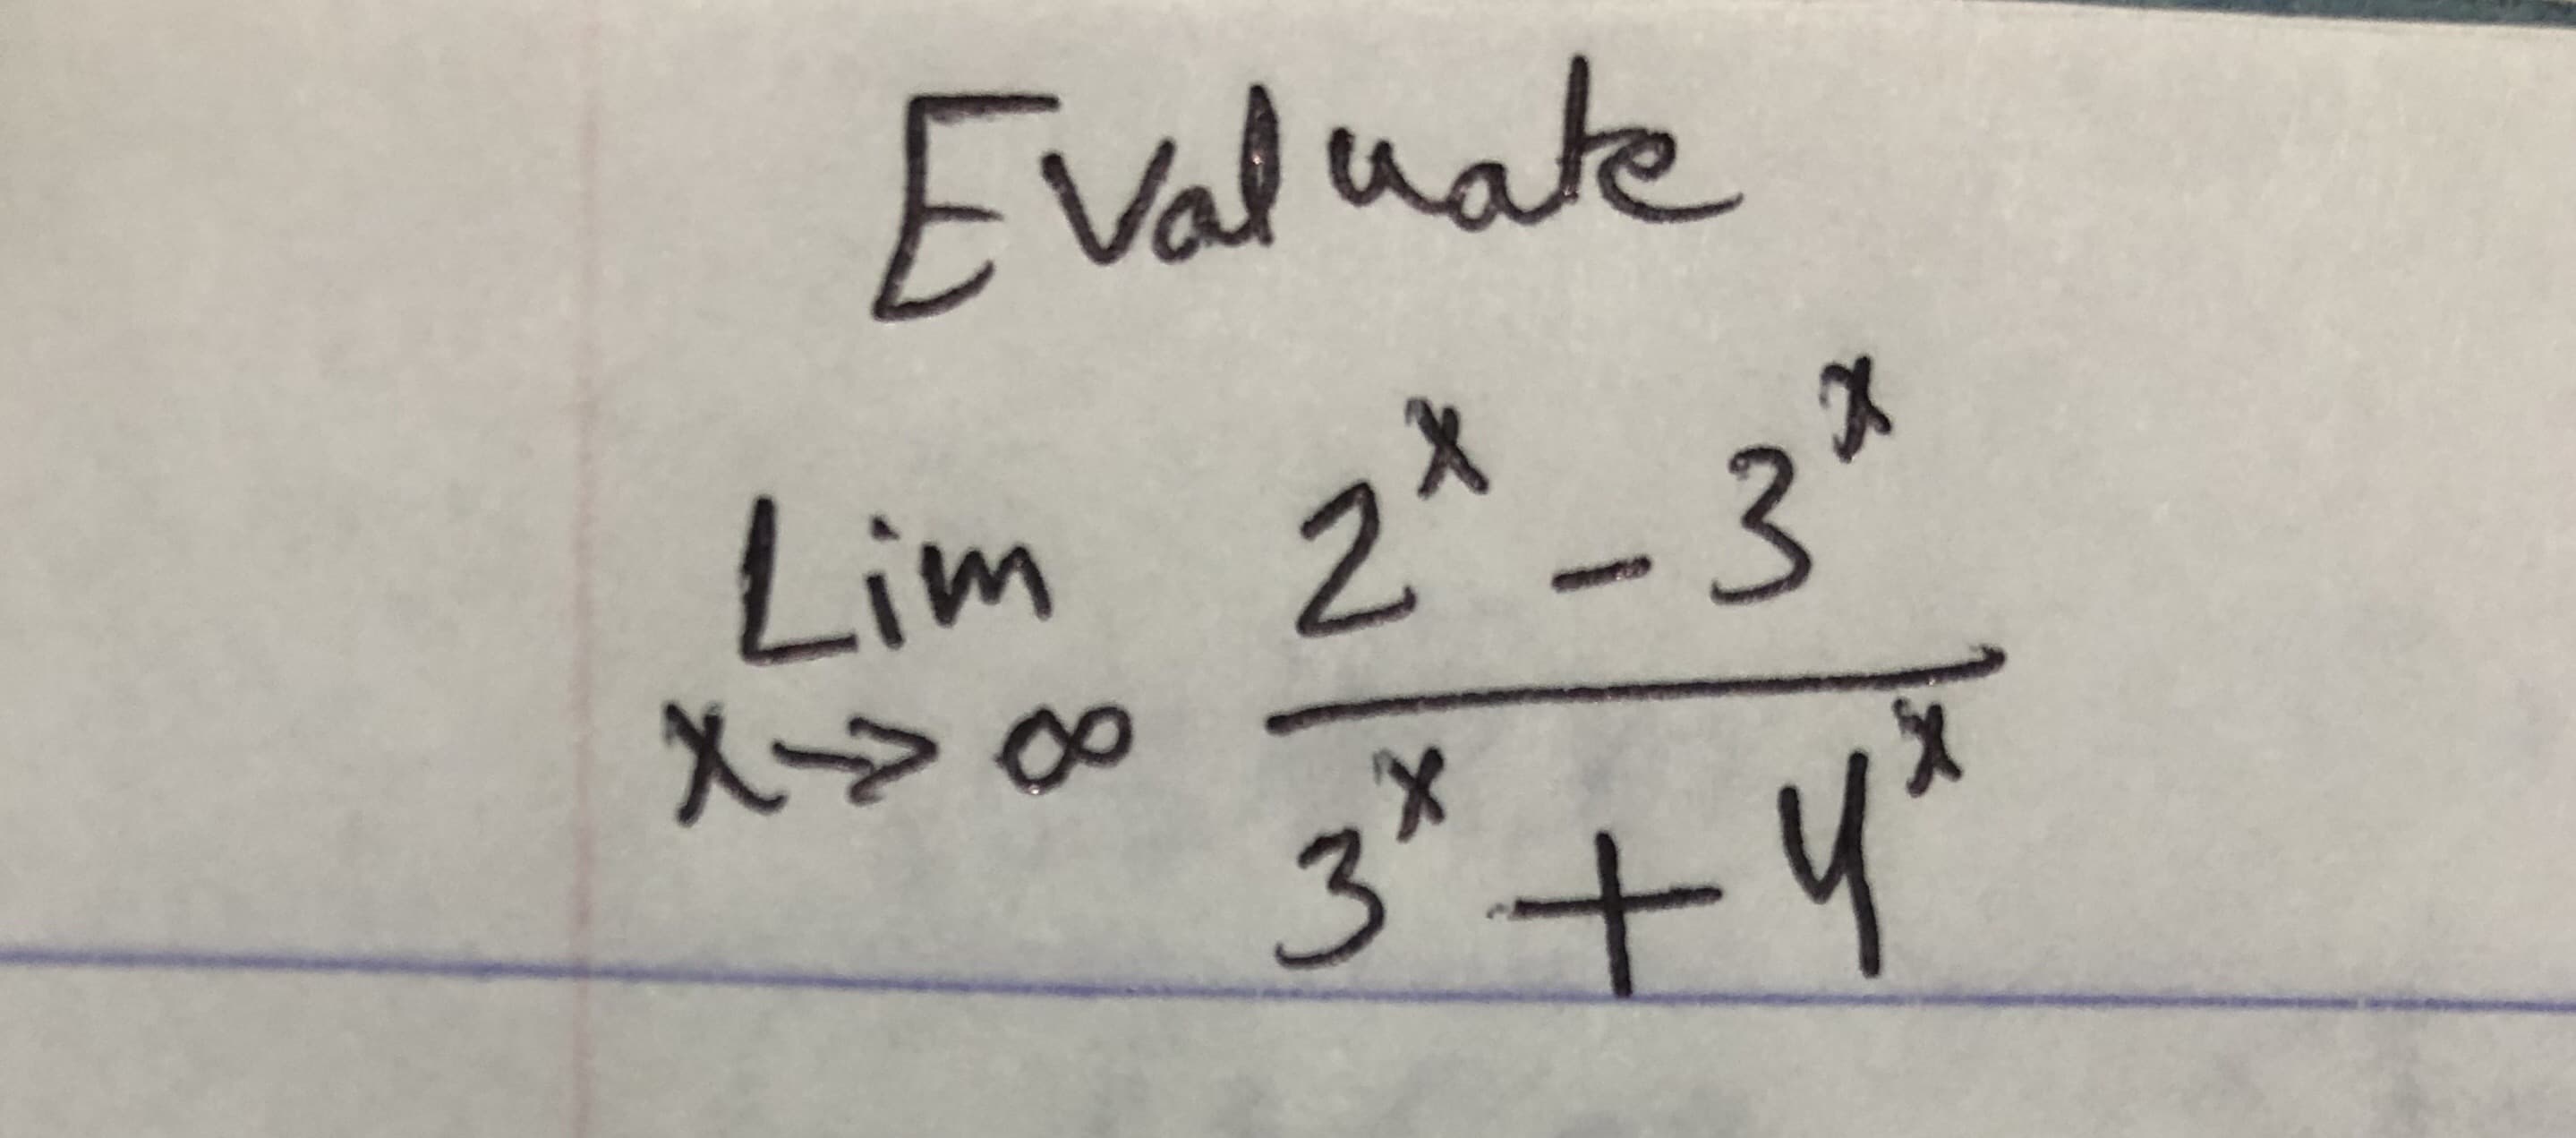 Evaluate
Lim 2* _3²
X> 00
3.
